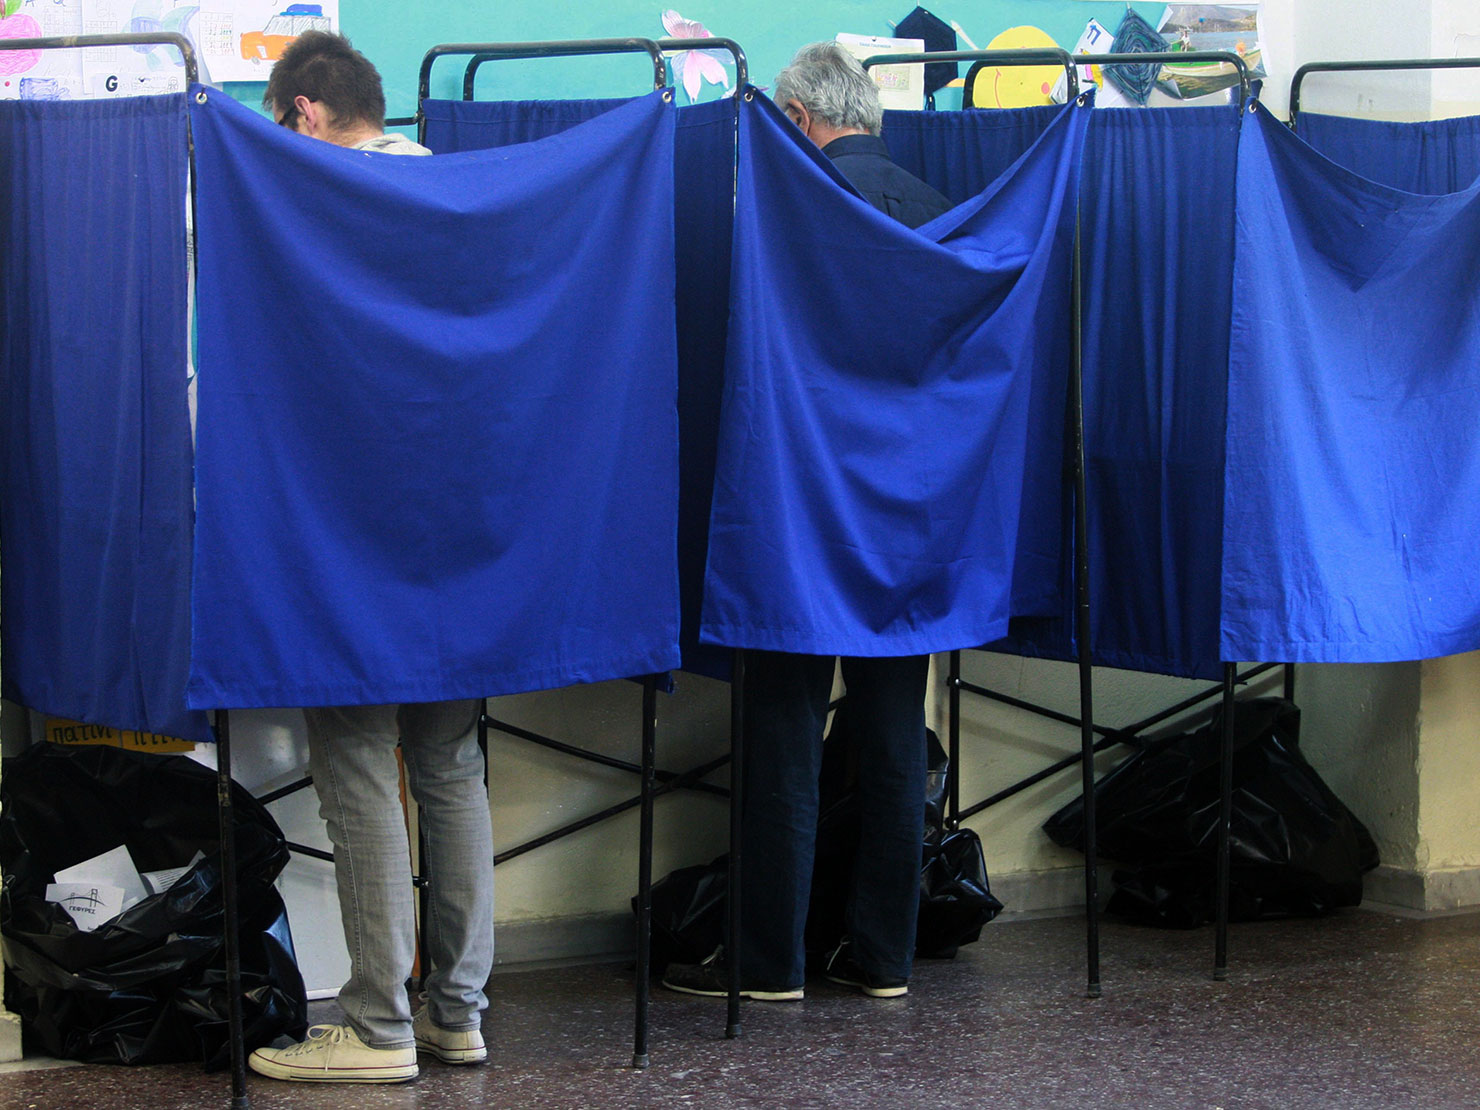 Το τελικό αποτέλεσμα των εκλογών στην Εκλογική Περιφέρεια Ρεθύμνης